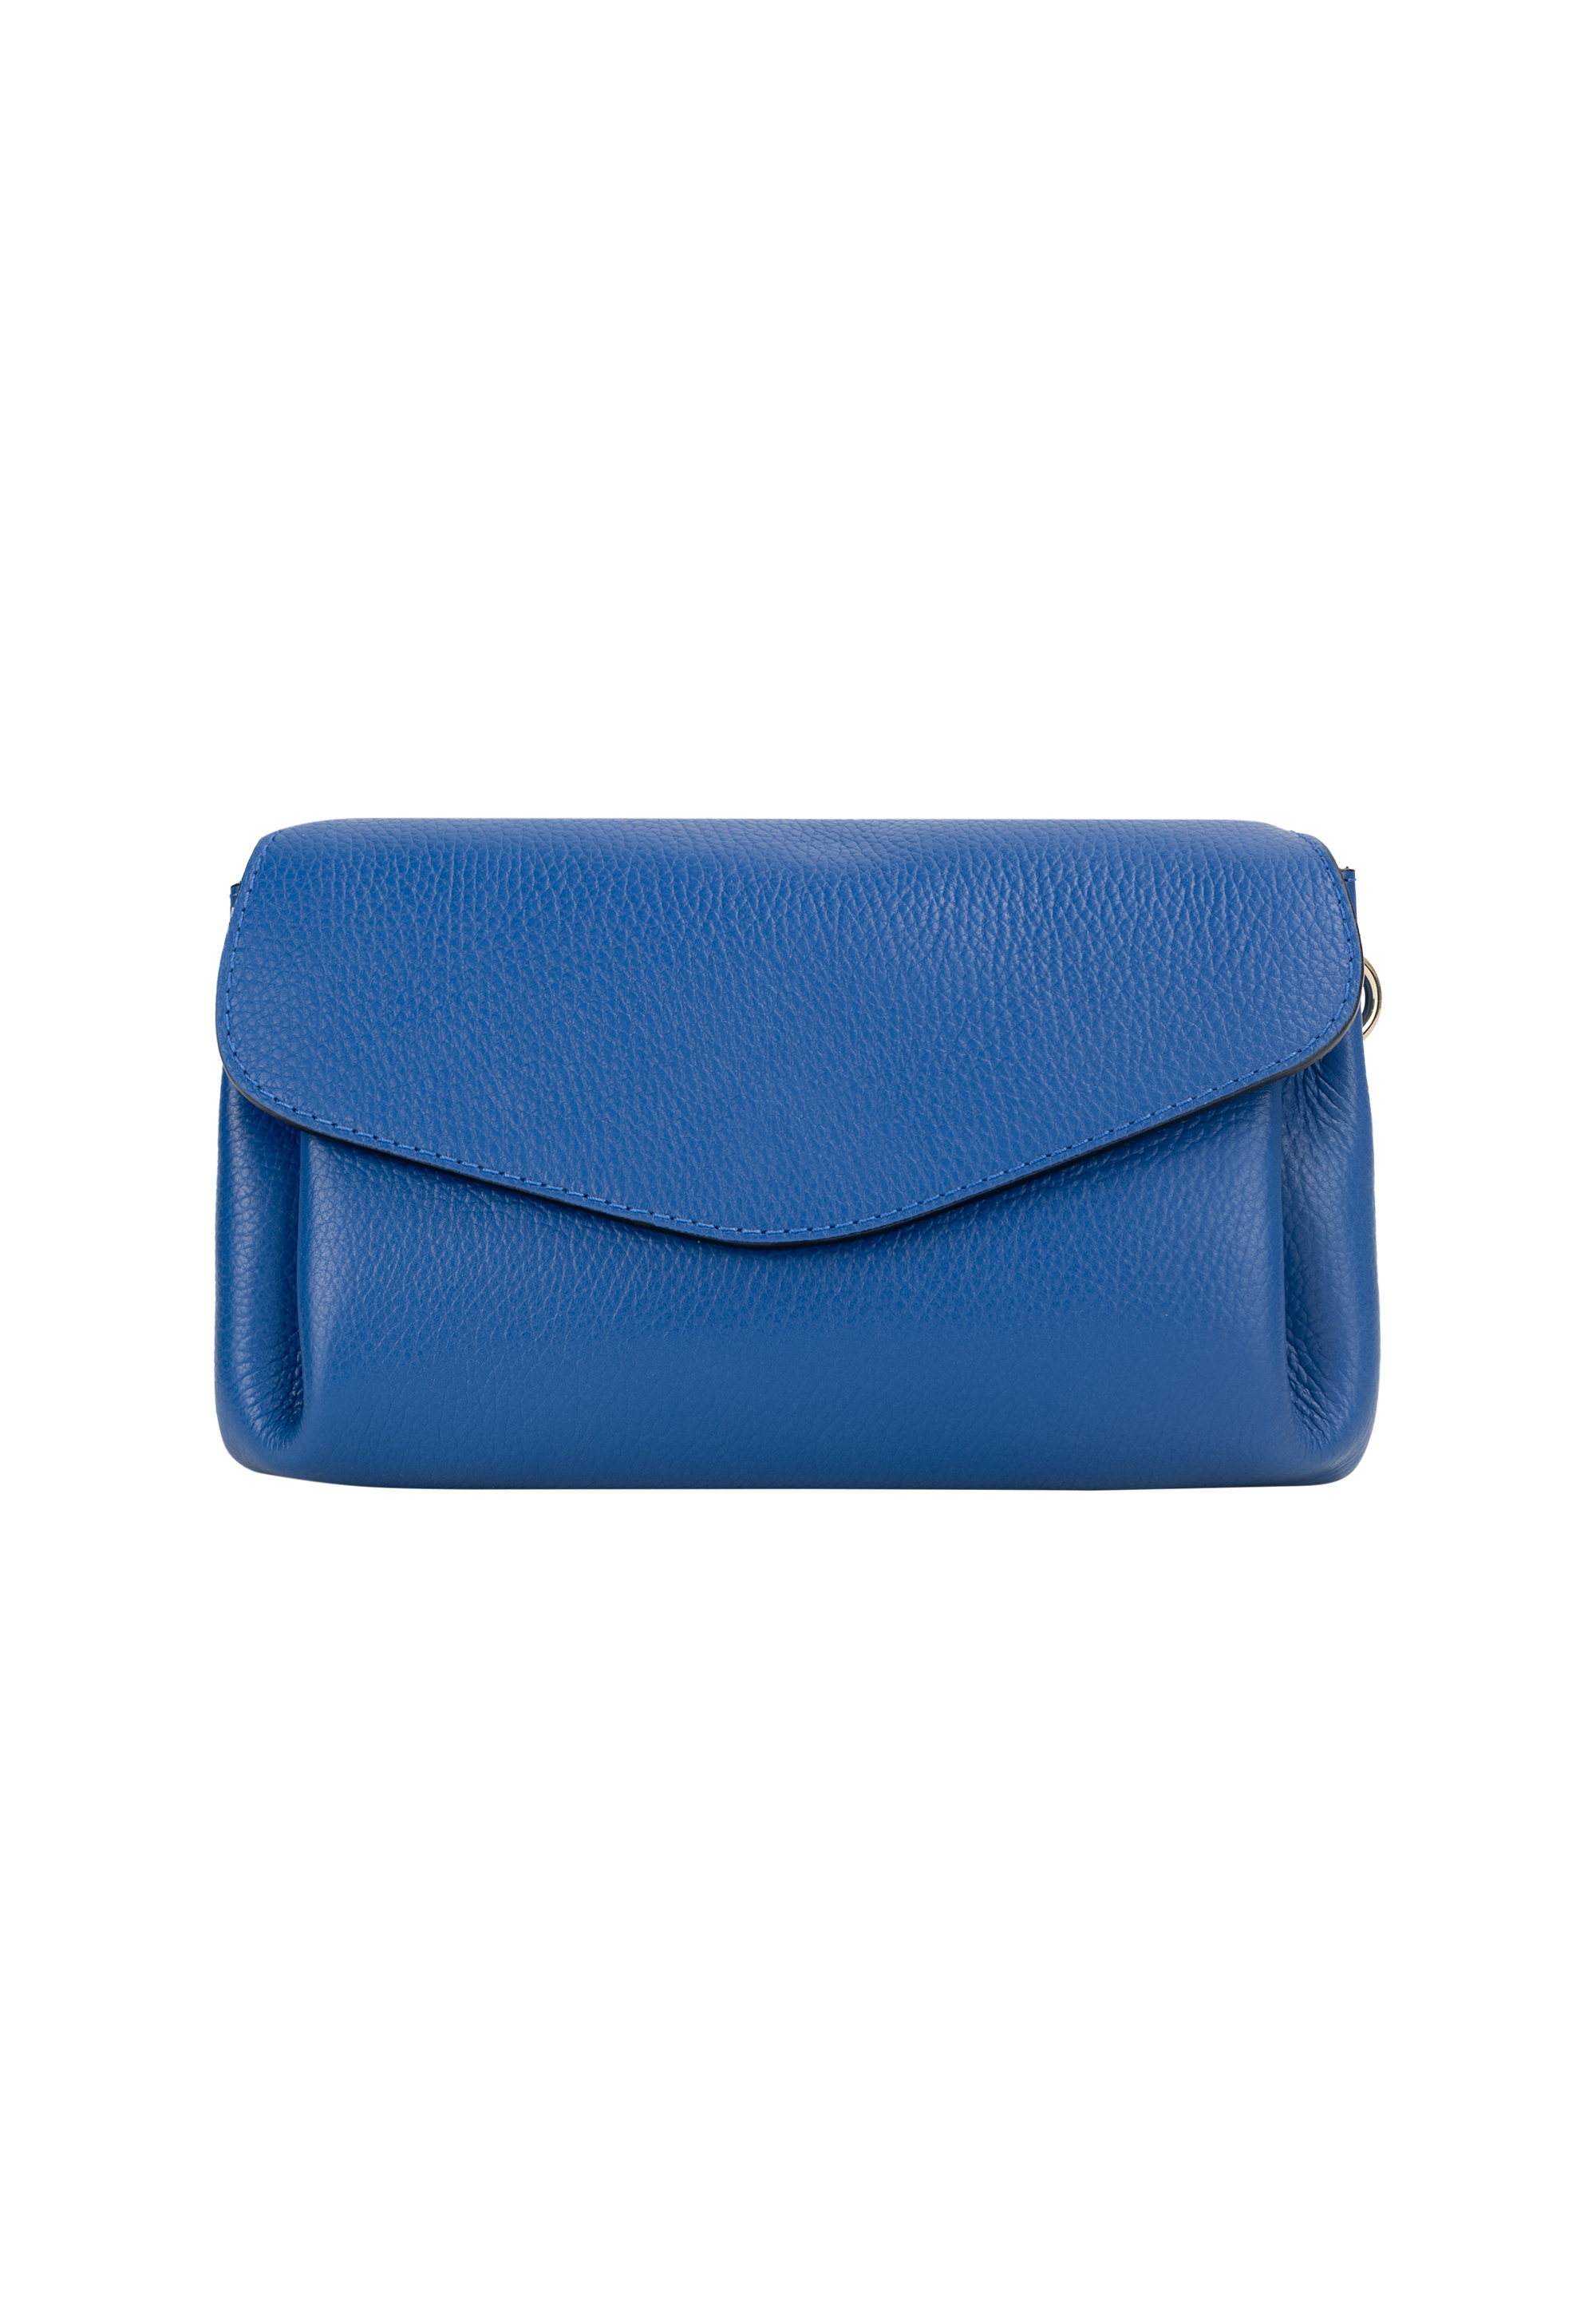 Сумка через плечо NAEMI Handtasche, цвет Azurblau сумка через плечо naemi handtasche цвет bernstein